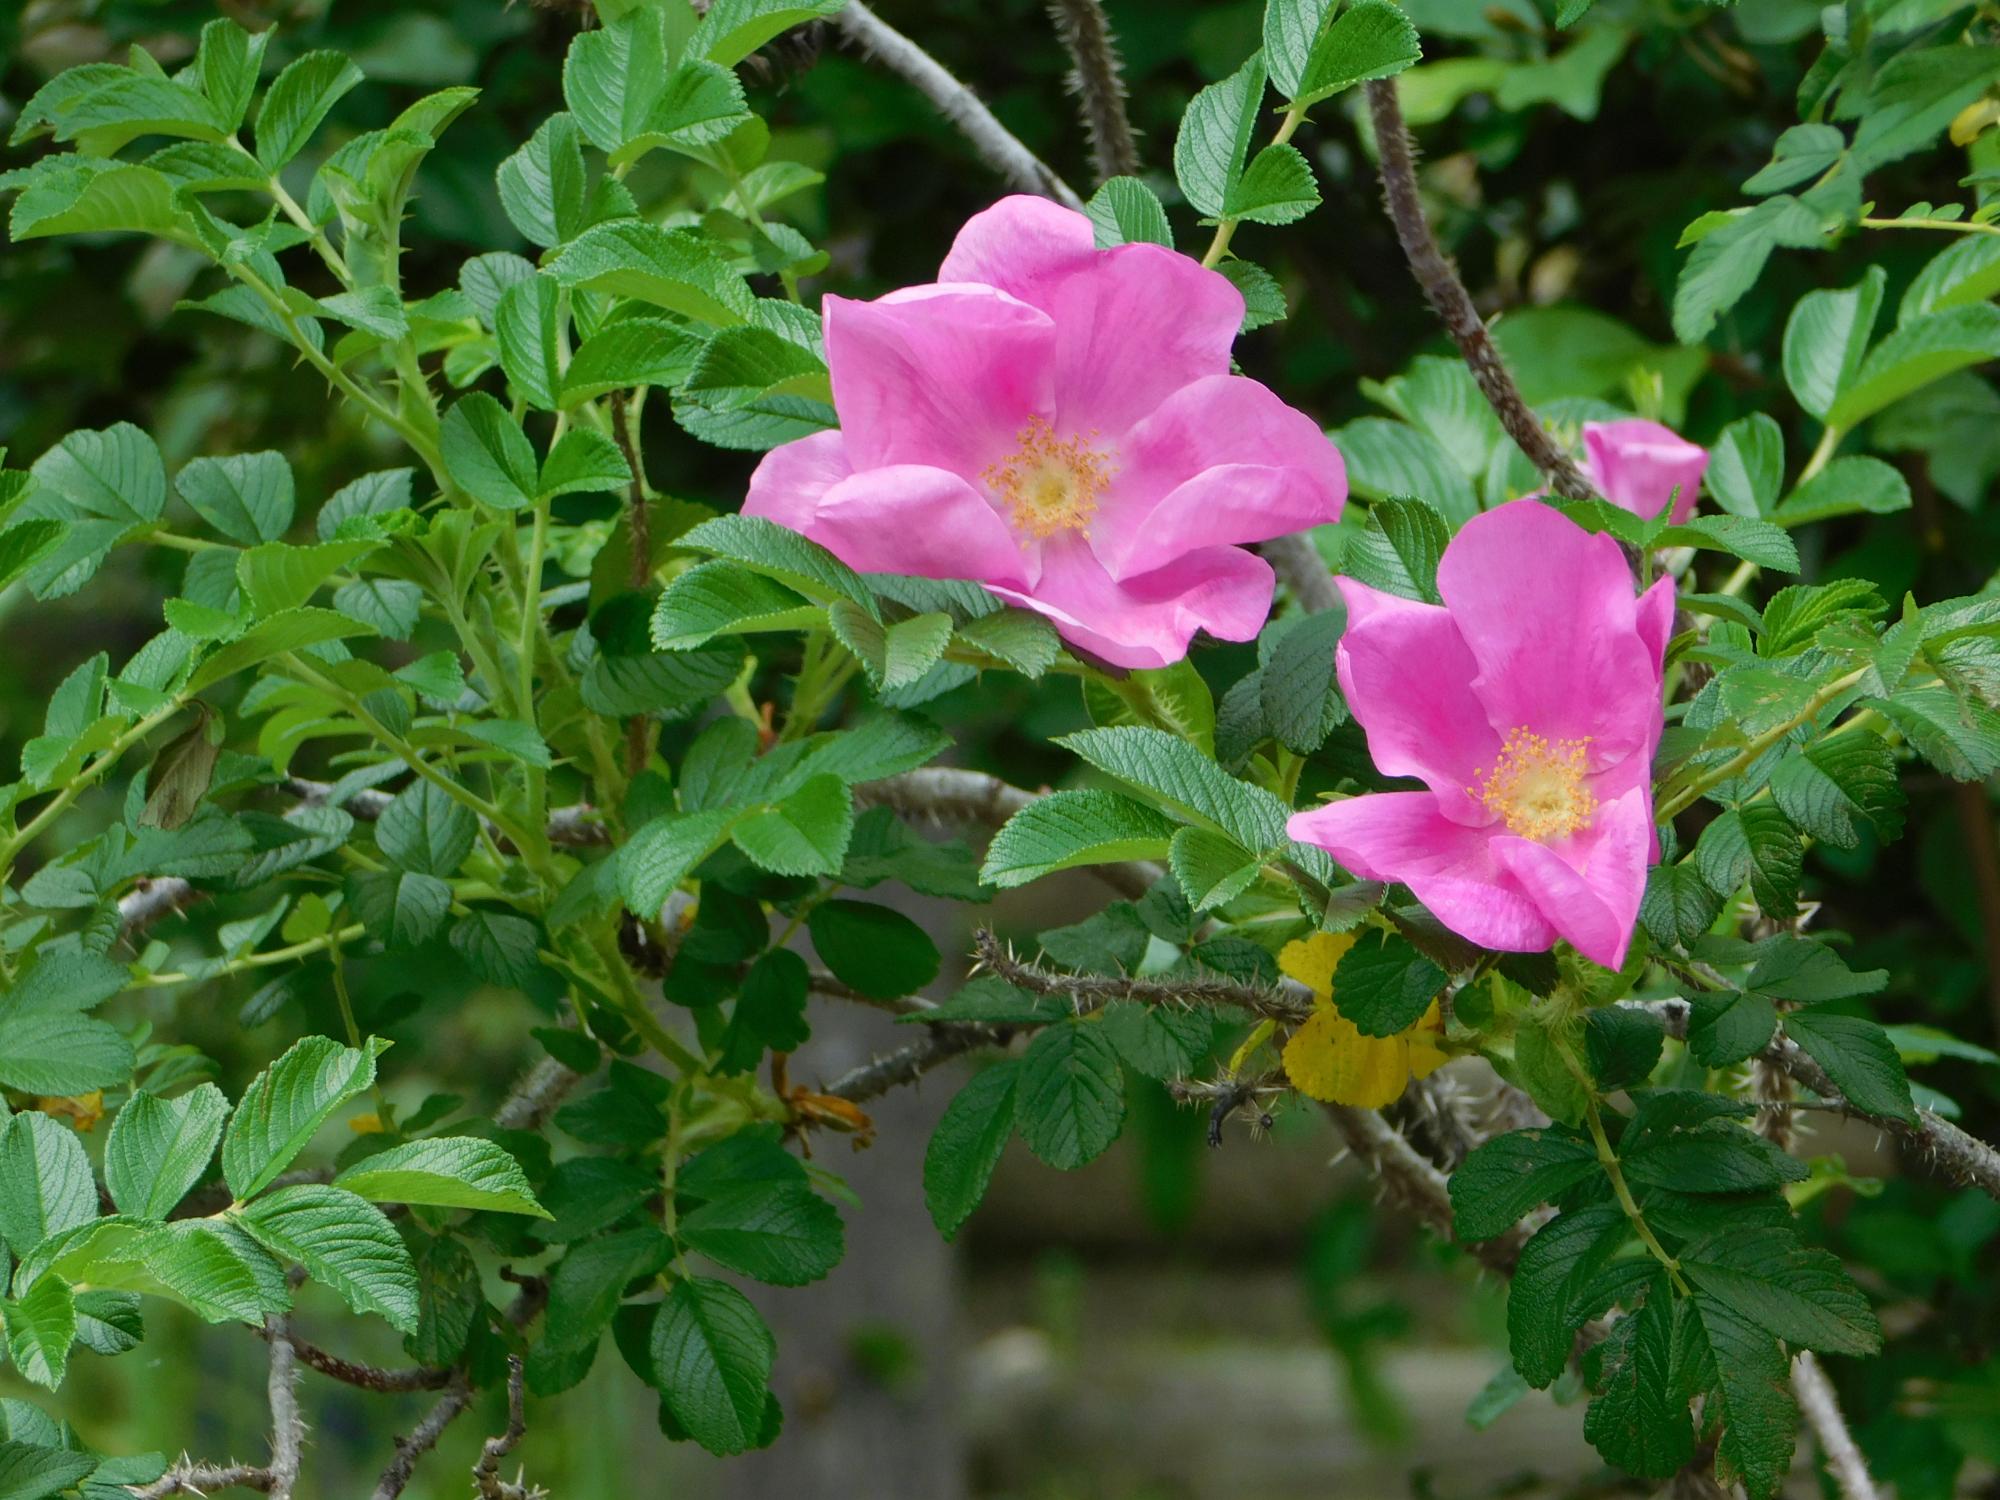 薬草園のスイレンの池近くに咲いていたバラ科のハマナスの花です。